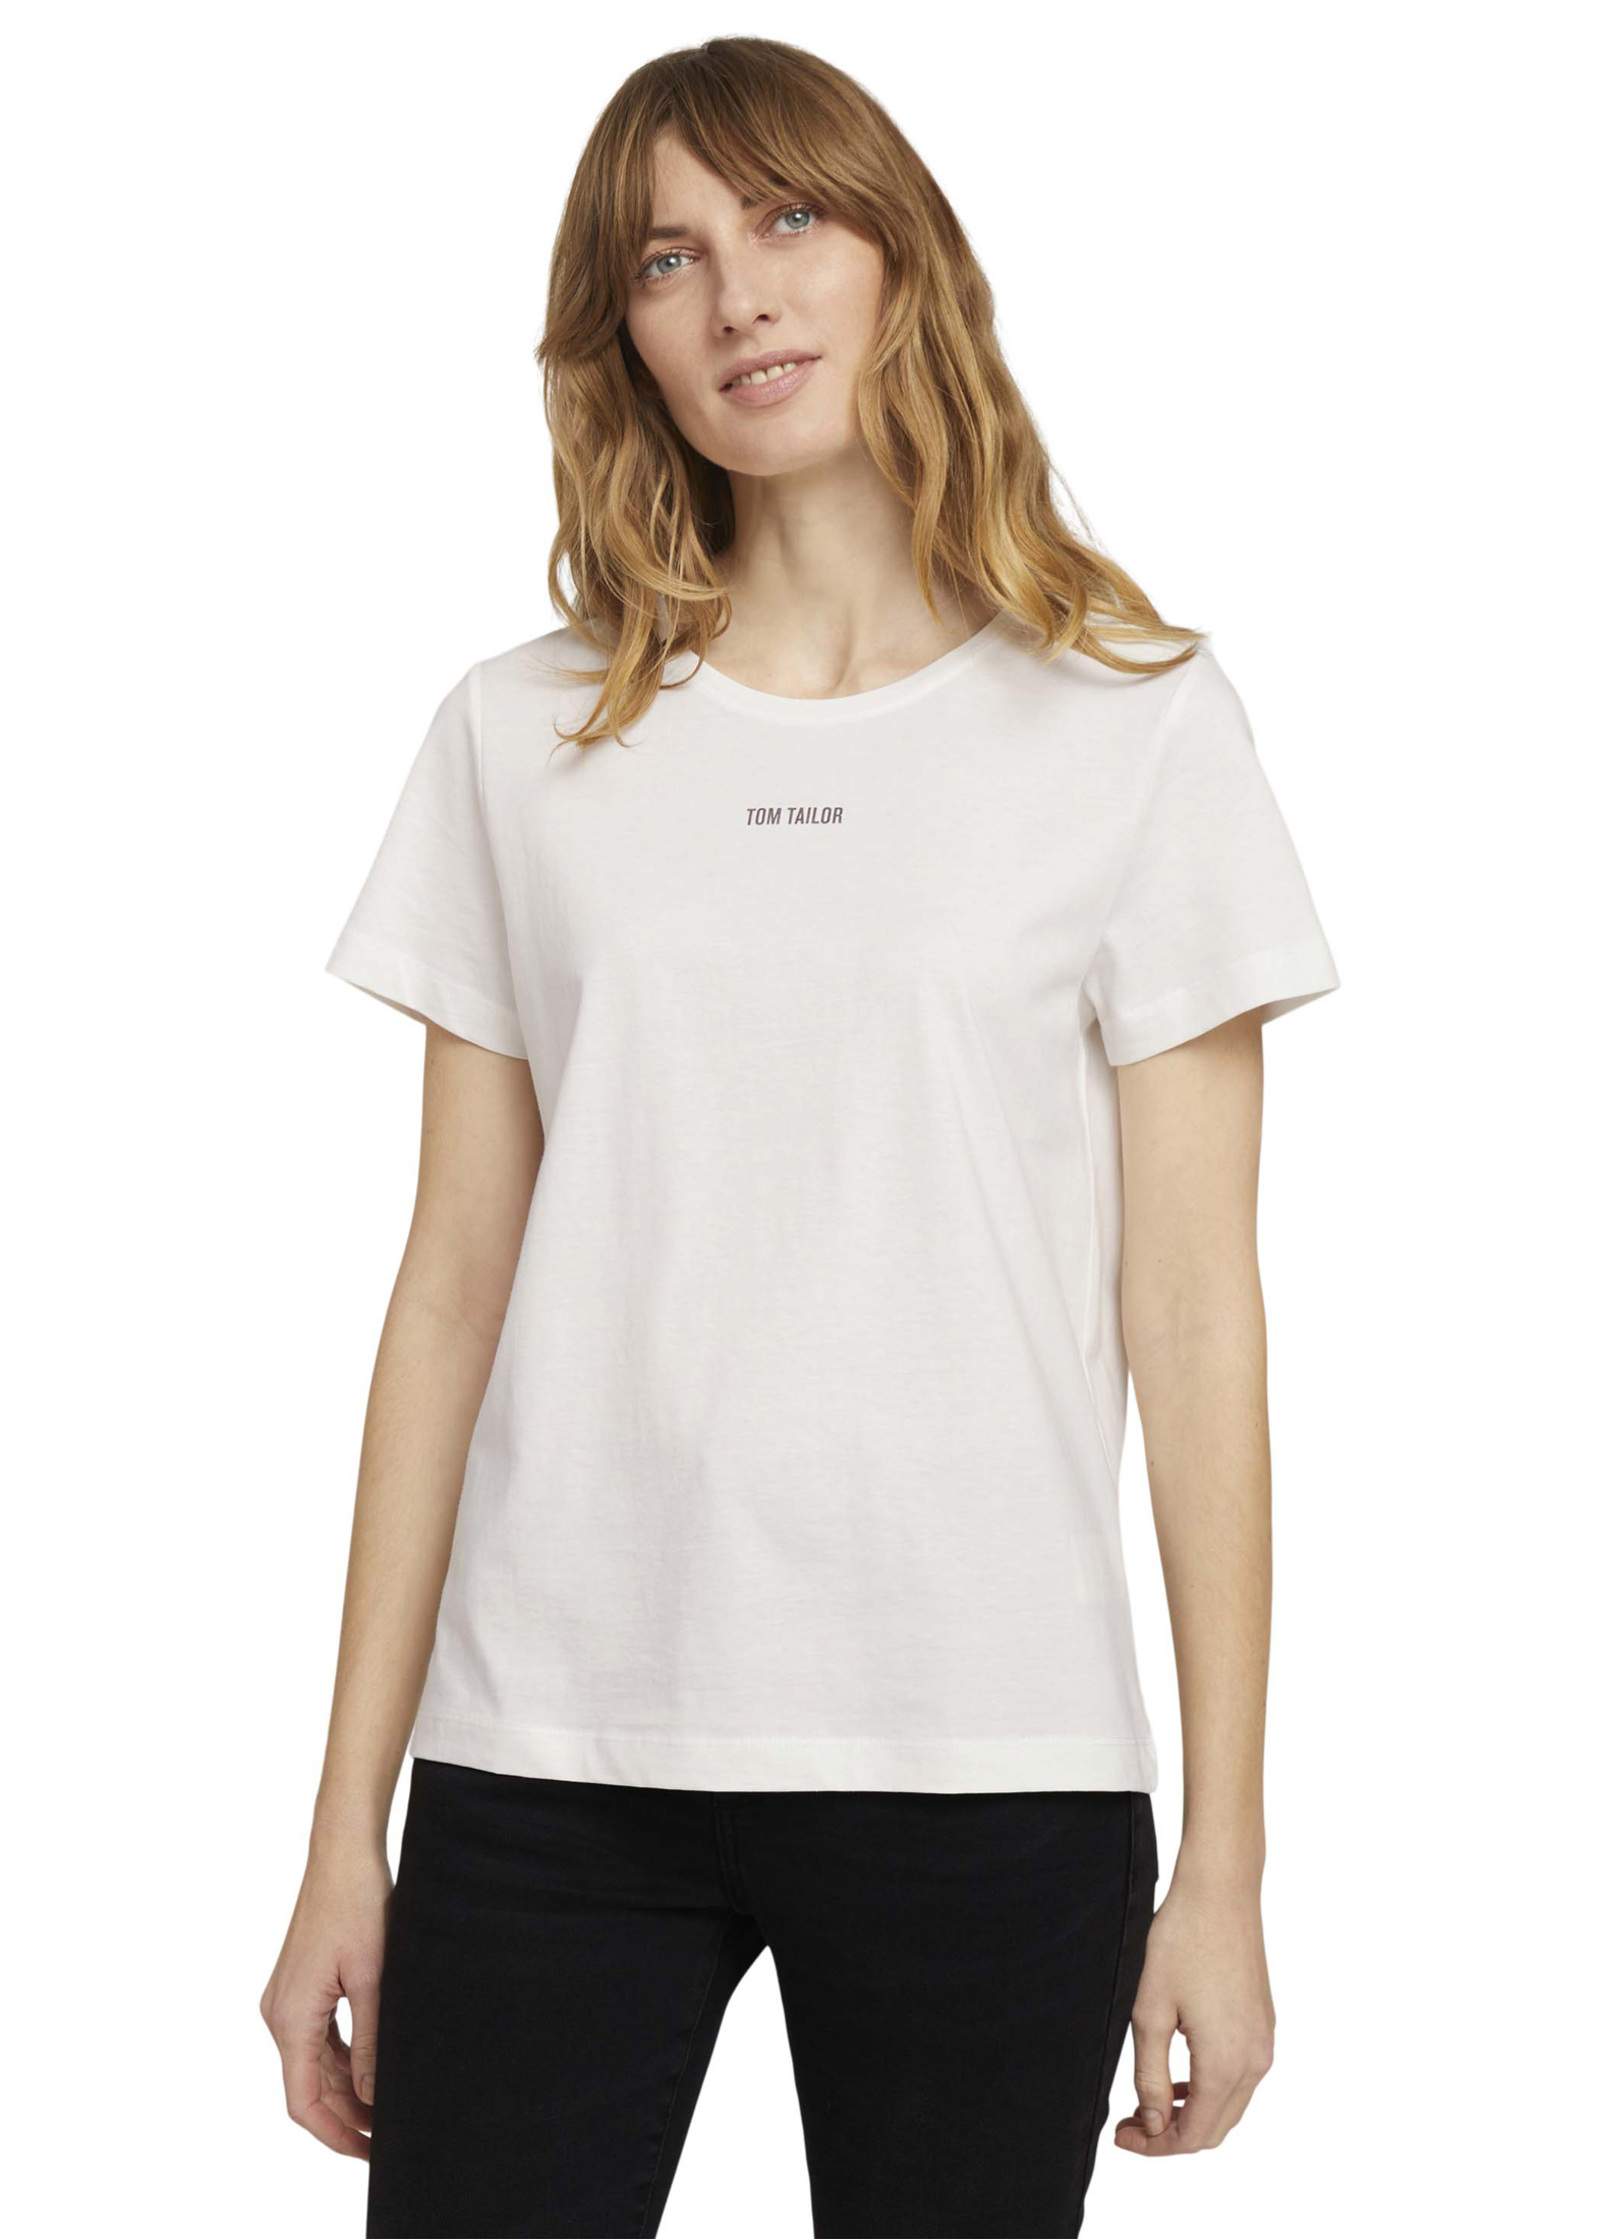 Whisper White C-neck Logo Tom Tailor® Size Tshirt - 3XL